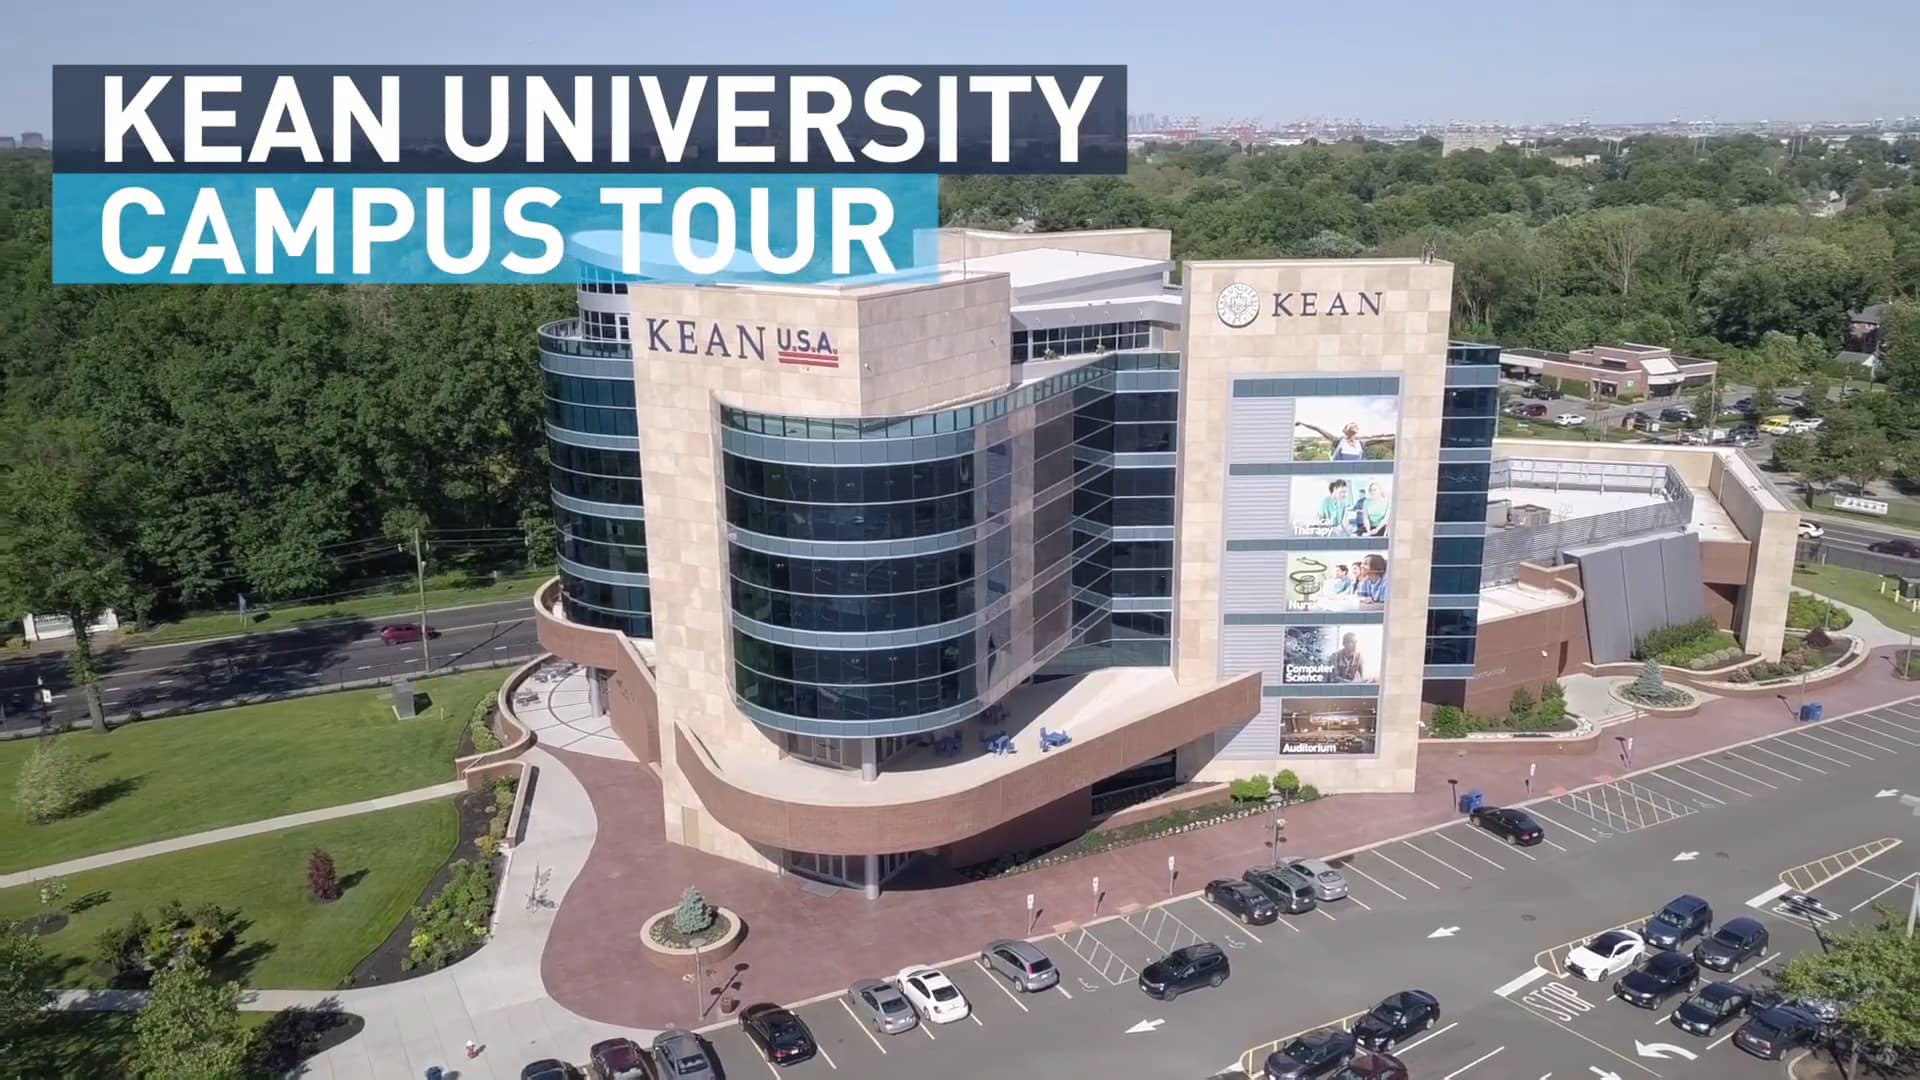 Kean University Campus Tour on Vimeo